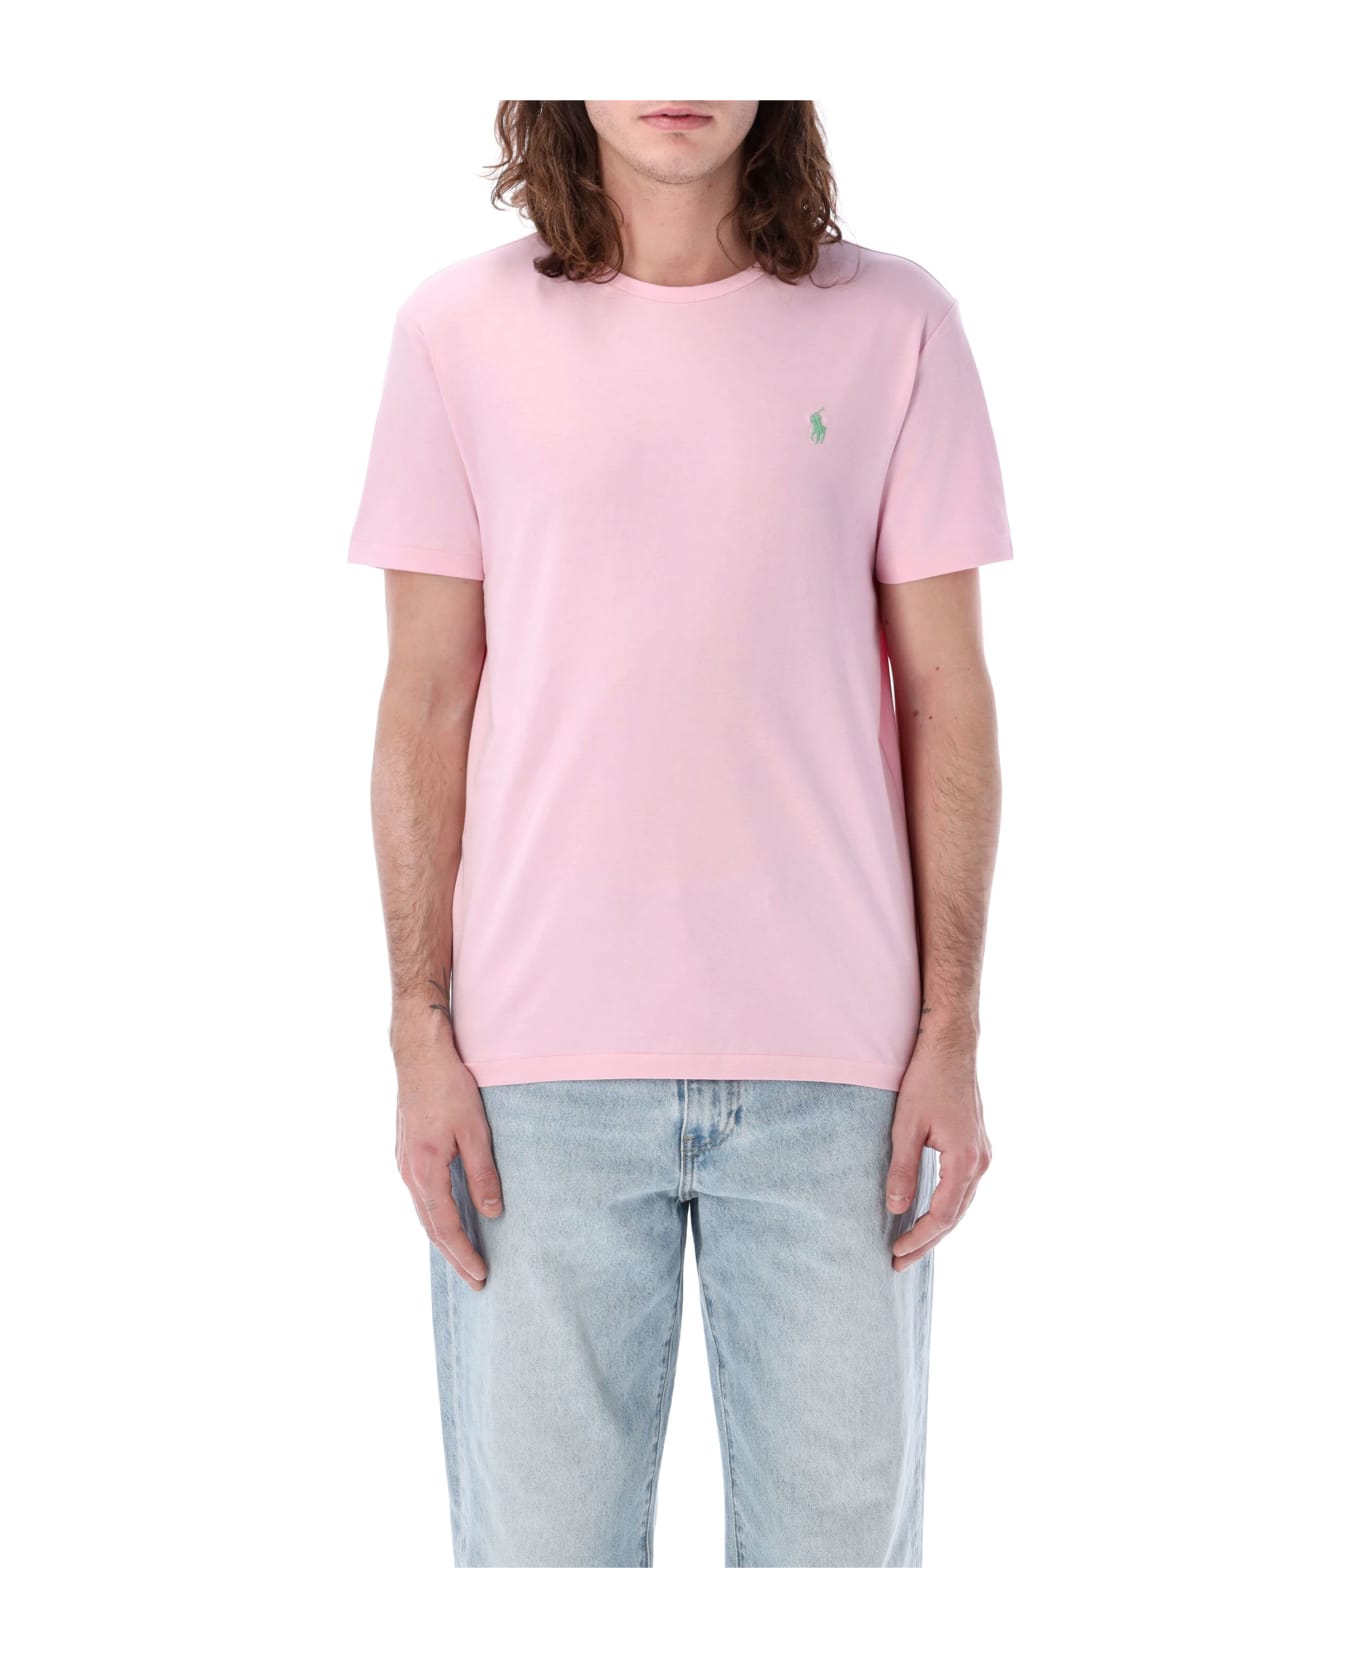 Polo Ralph Lauren Classic T-shirt - PINK GARDEN シャツ